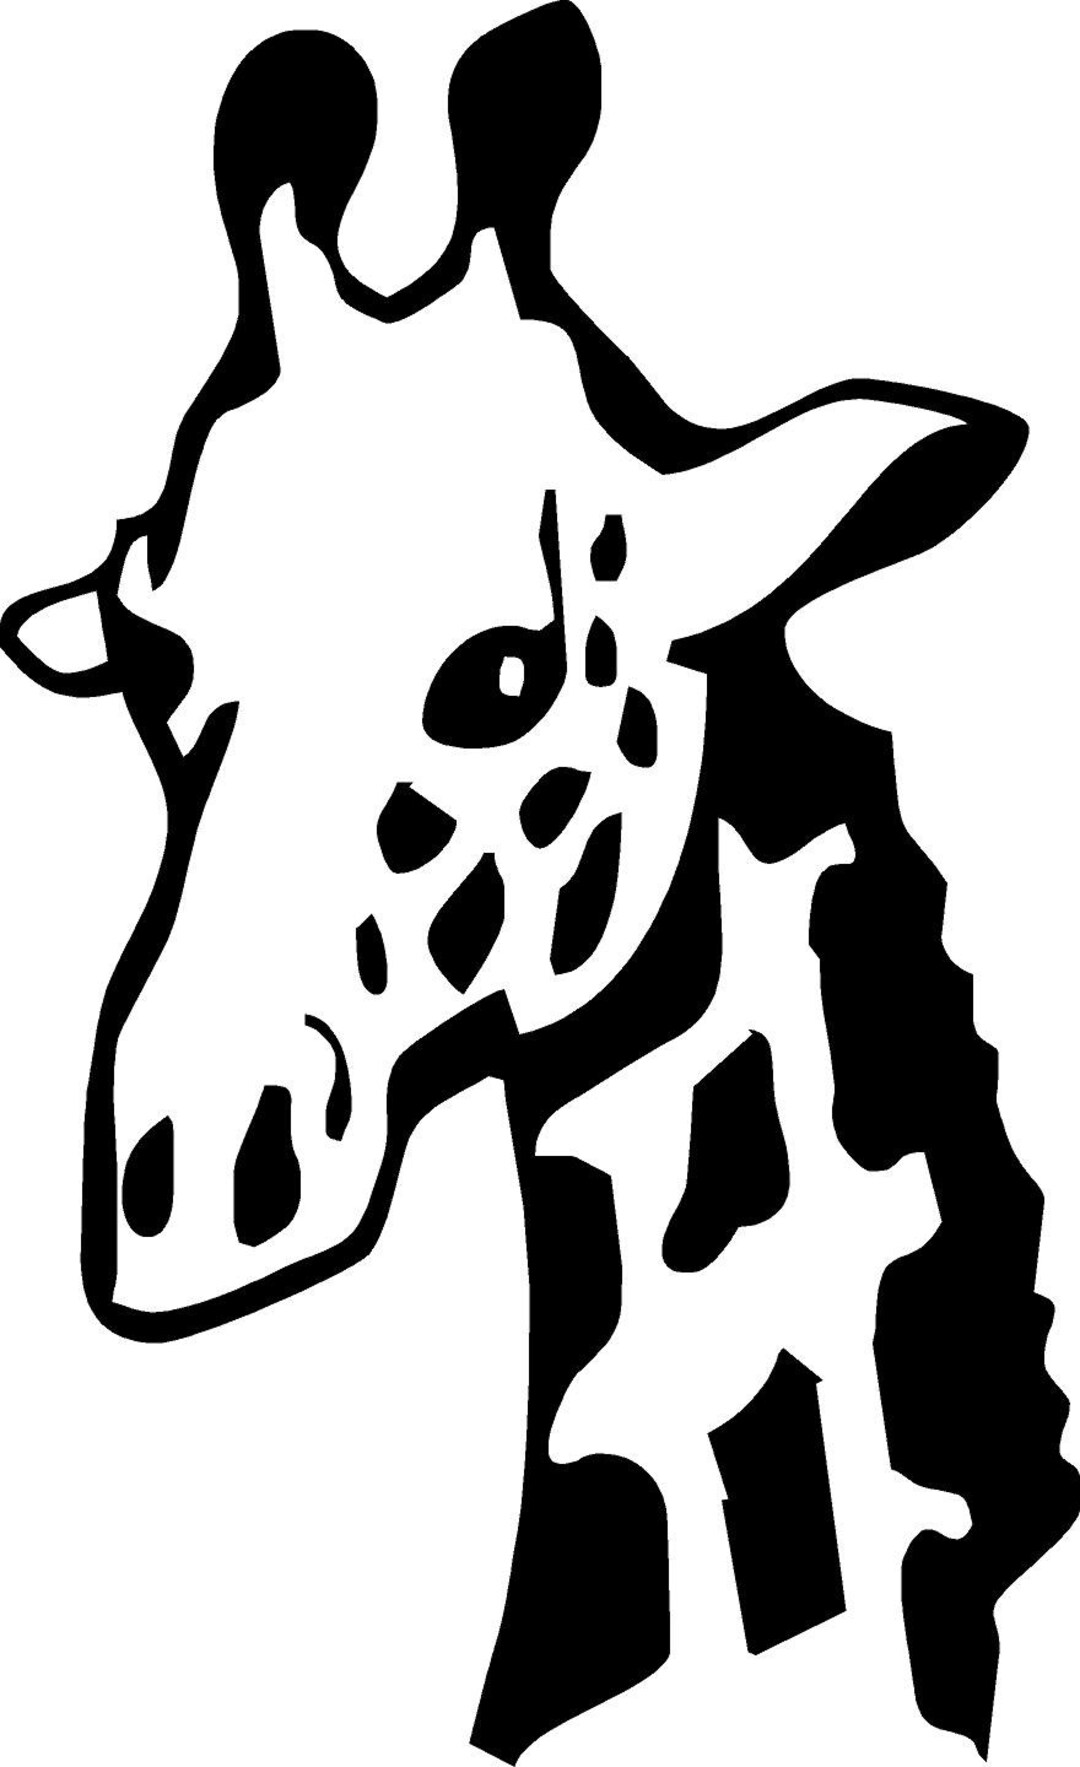 Giraffe Neck V.2 Vinyl Decal/sticker - Etsy